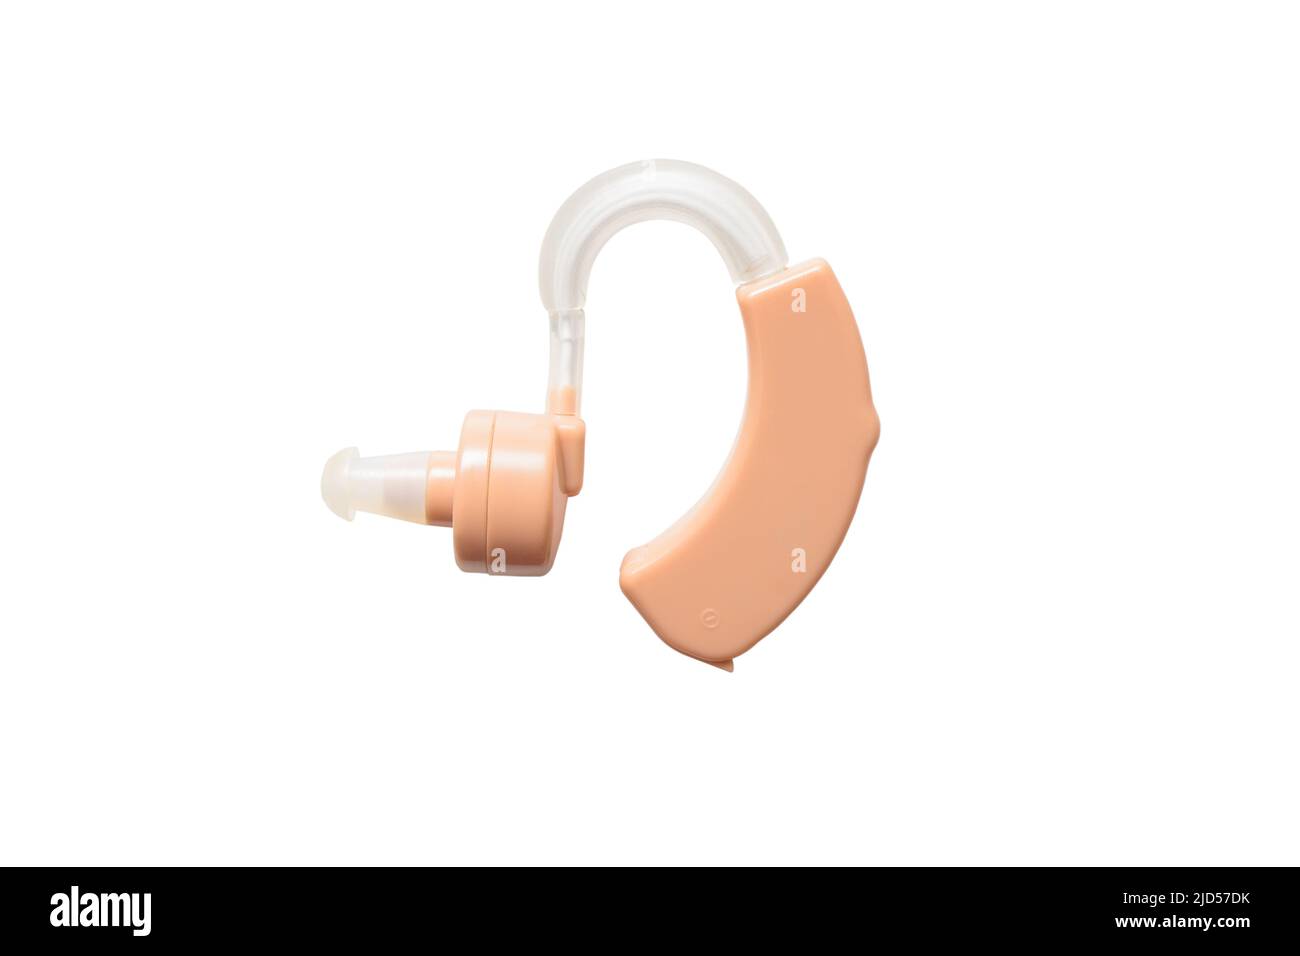 Hörgerät zur Schallverstärkung isoliert auf weißem Hintergrund. Medizinische Werkzeuge und medizinische Geräte Stockfoto